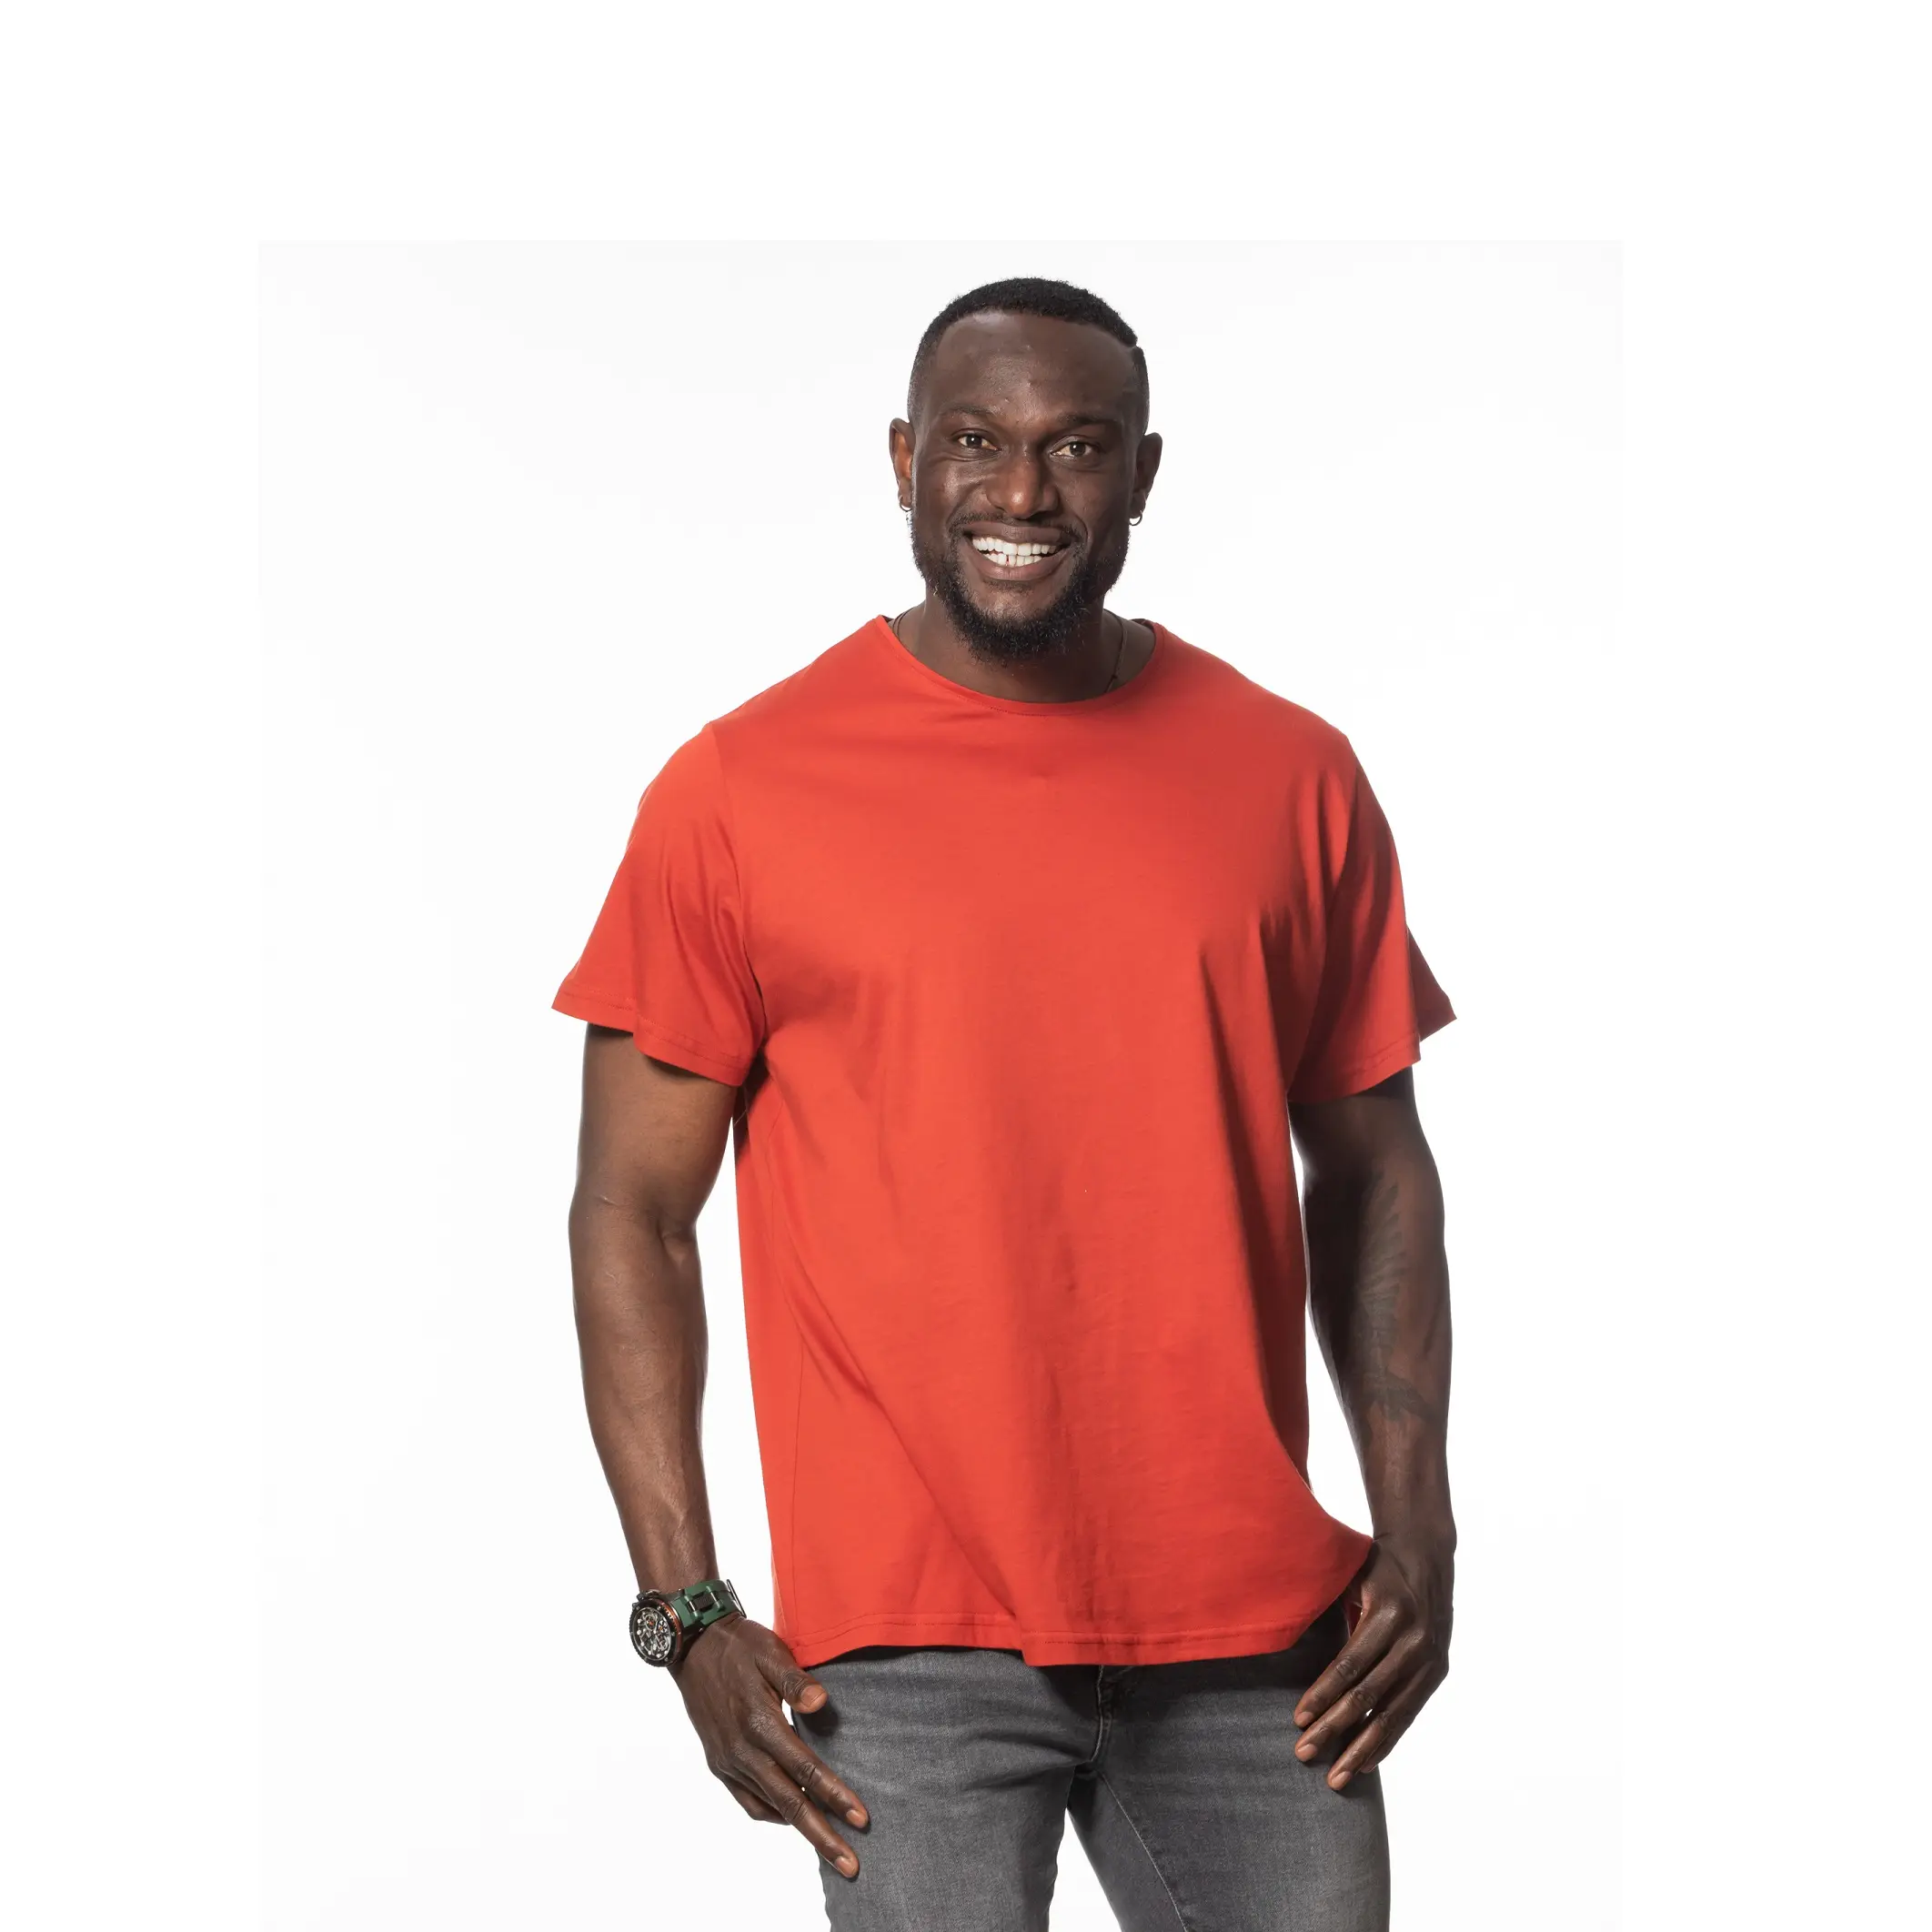 T shirt erkekler için % 100% pamuk turuncu renk ekip boyun ağır büyük boy Premium kalite türkiye'de yapılan